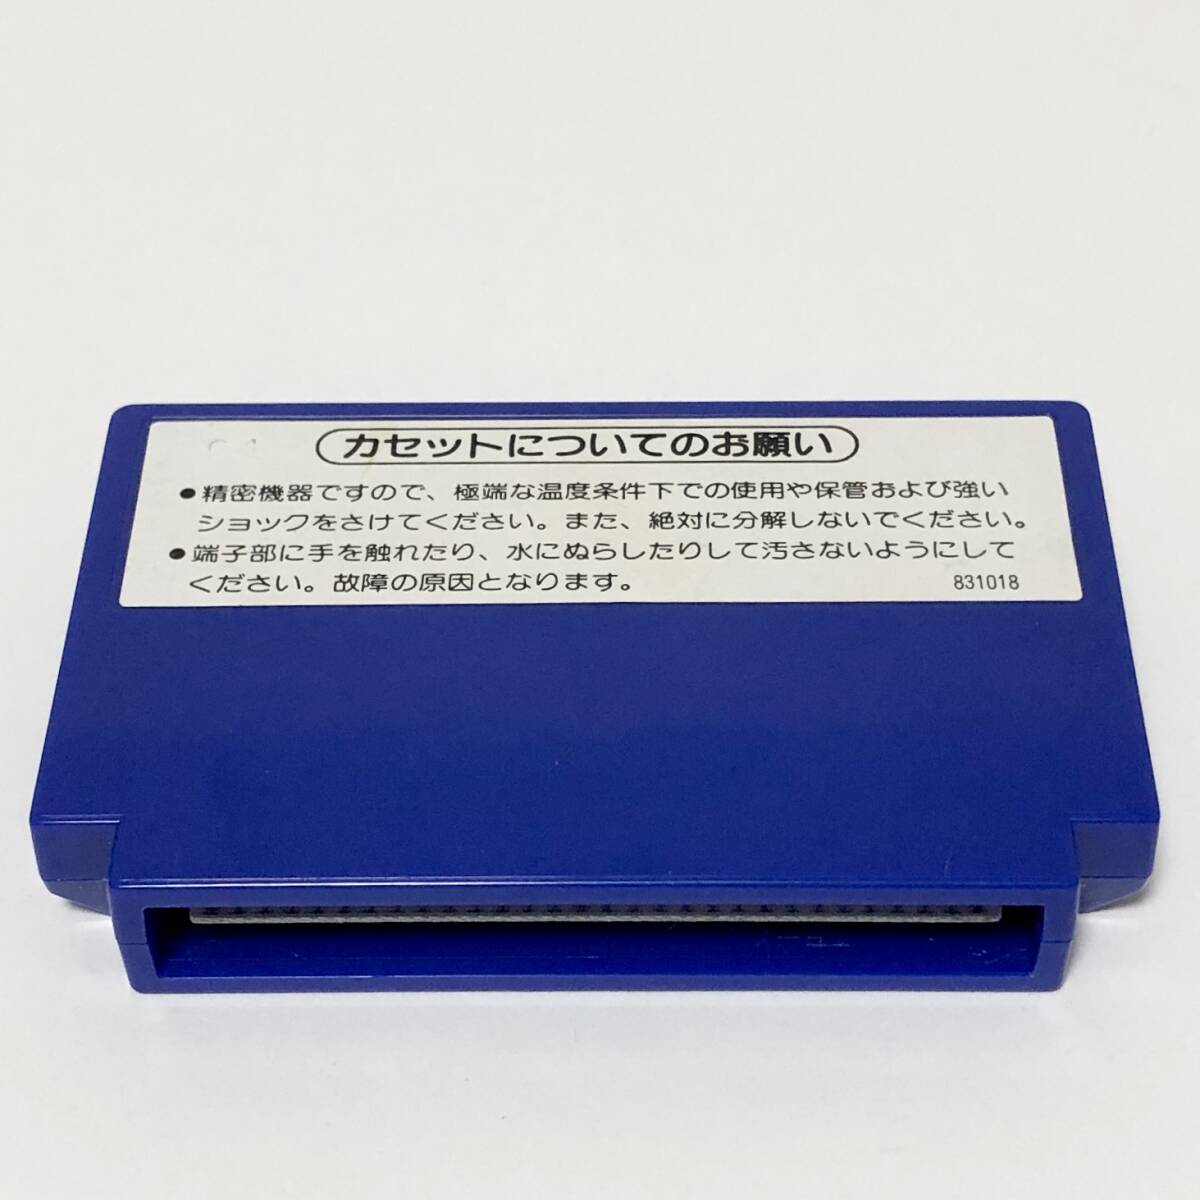 ファミコン ベースボール 小箱版 箱説付き 痛みあり 操作法早見図付き Nintendo Famicom Baseball Small Box Version CIB Tested_画像8